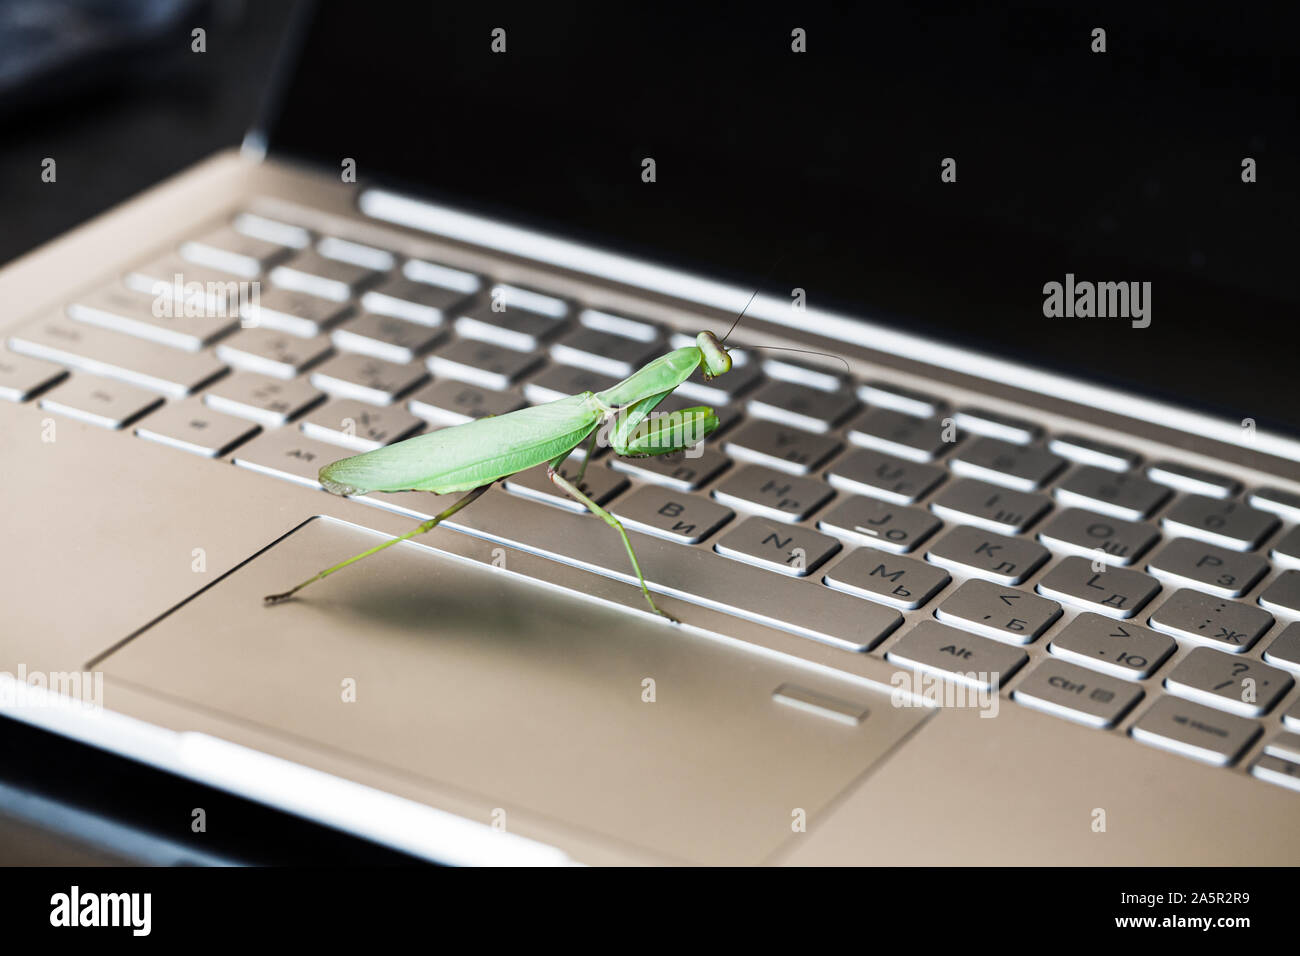 Computer bug Metapher, große mantis Wanderungen auf einem Laptop Tastatur mit englischen und russischen Buchstaben Stockfoto